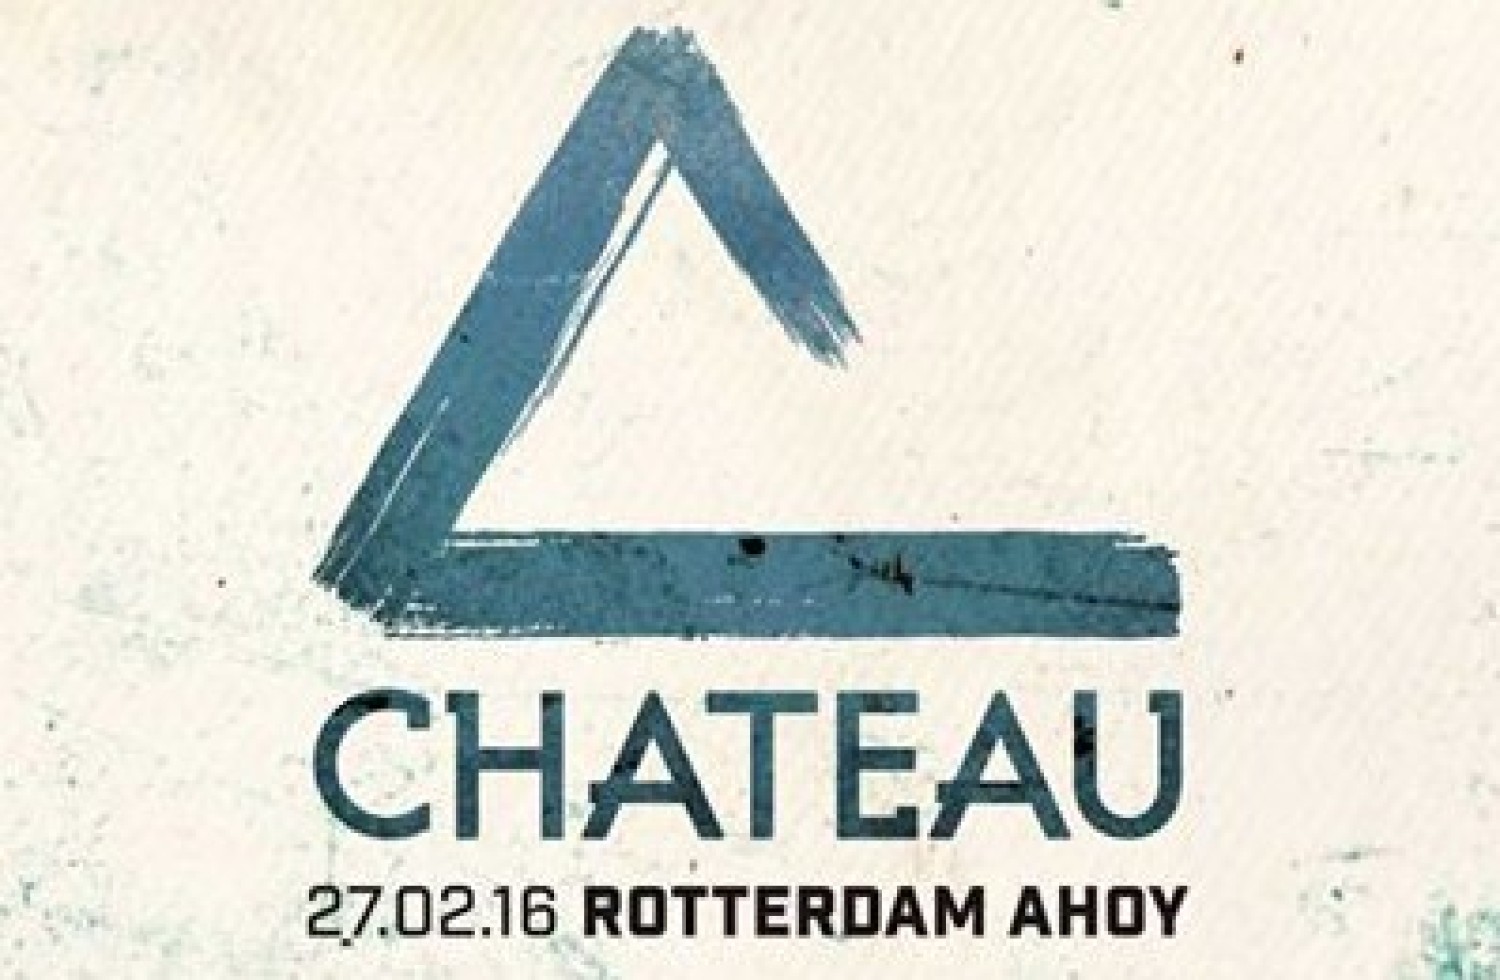 Party nieuws: Chateau Techno wijkt uit naar Ahoy Rotterdam!